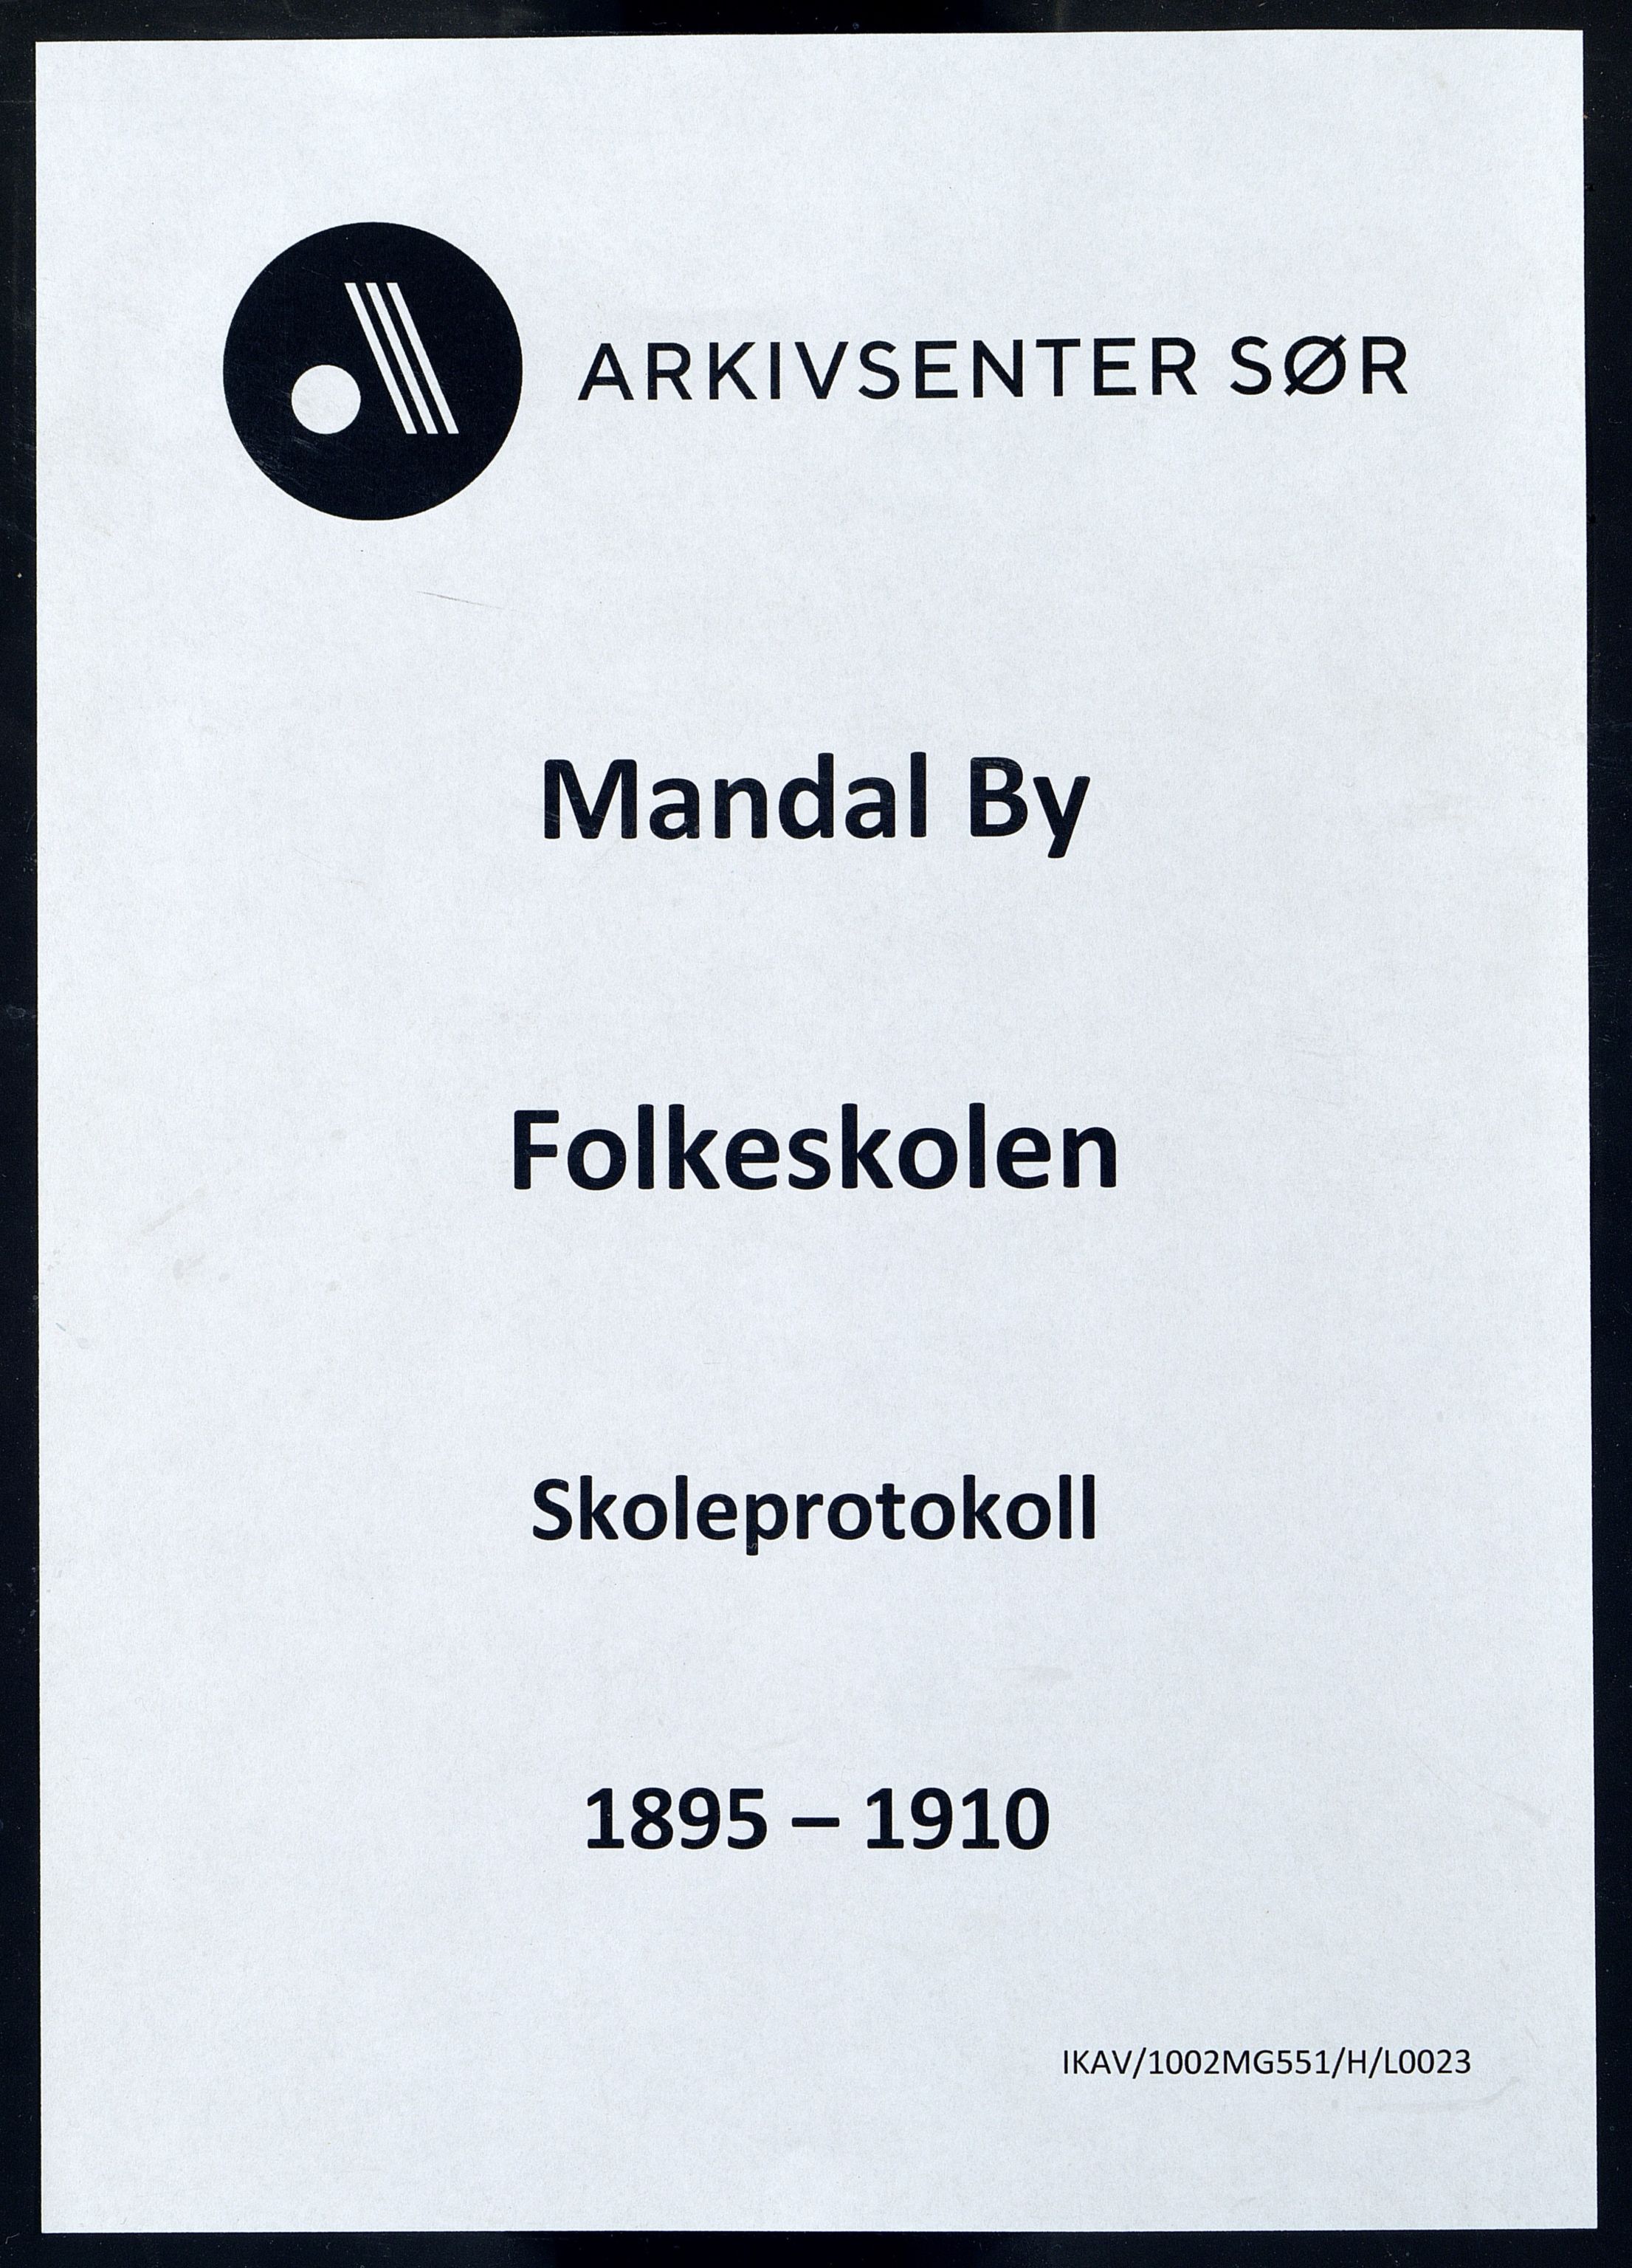 Mandal By - Mandal Allmueskole/Folkeskole/Skole, IKAV/1002MG551/H/L0023: Skoleprotokoll, 1895-1910